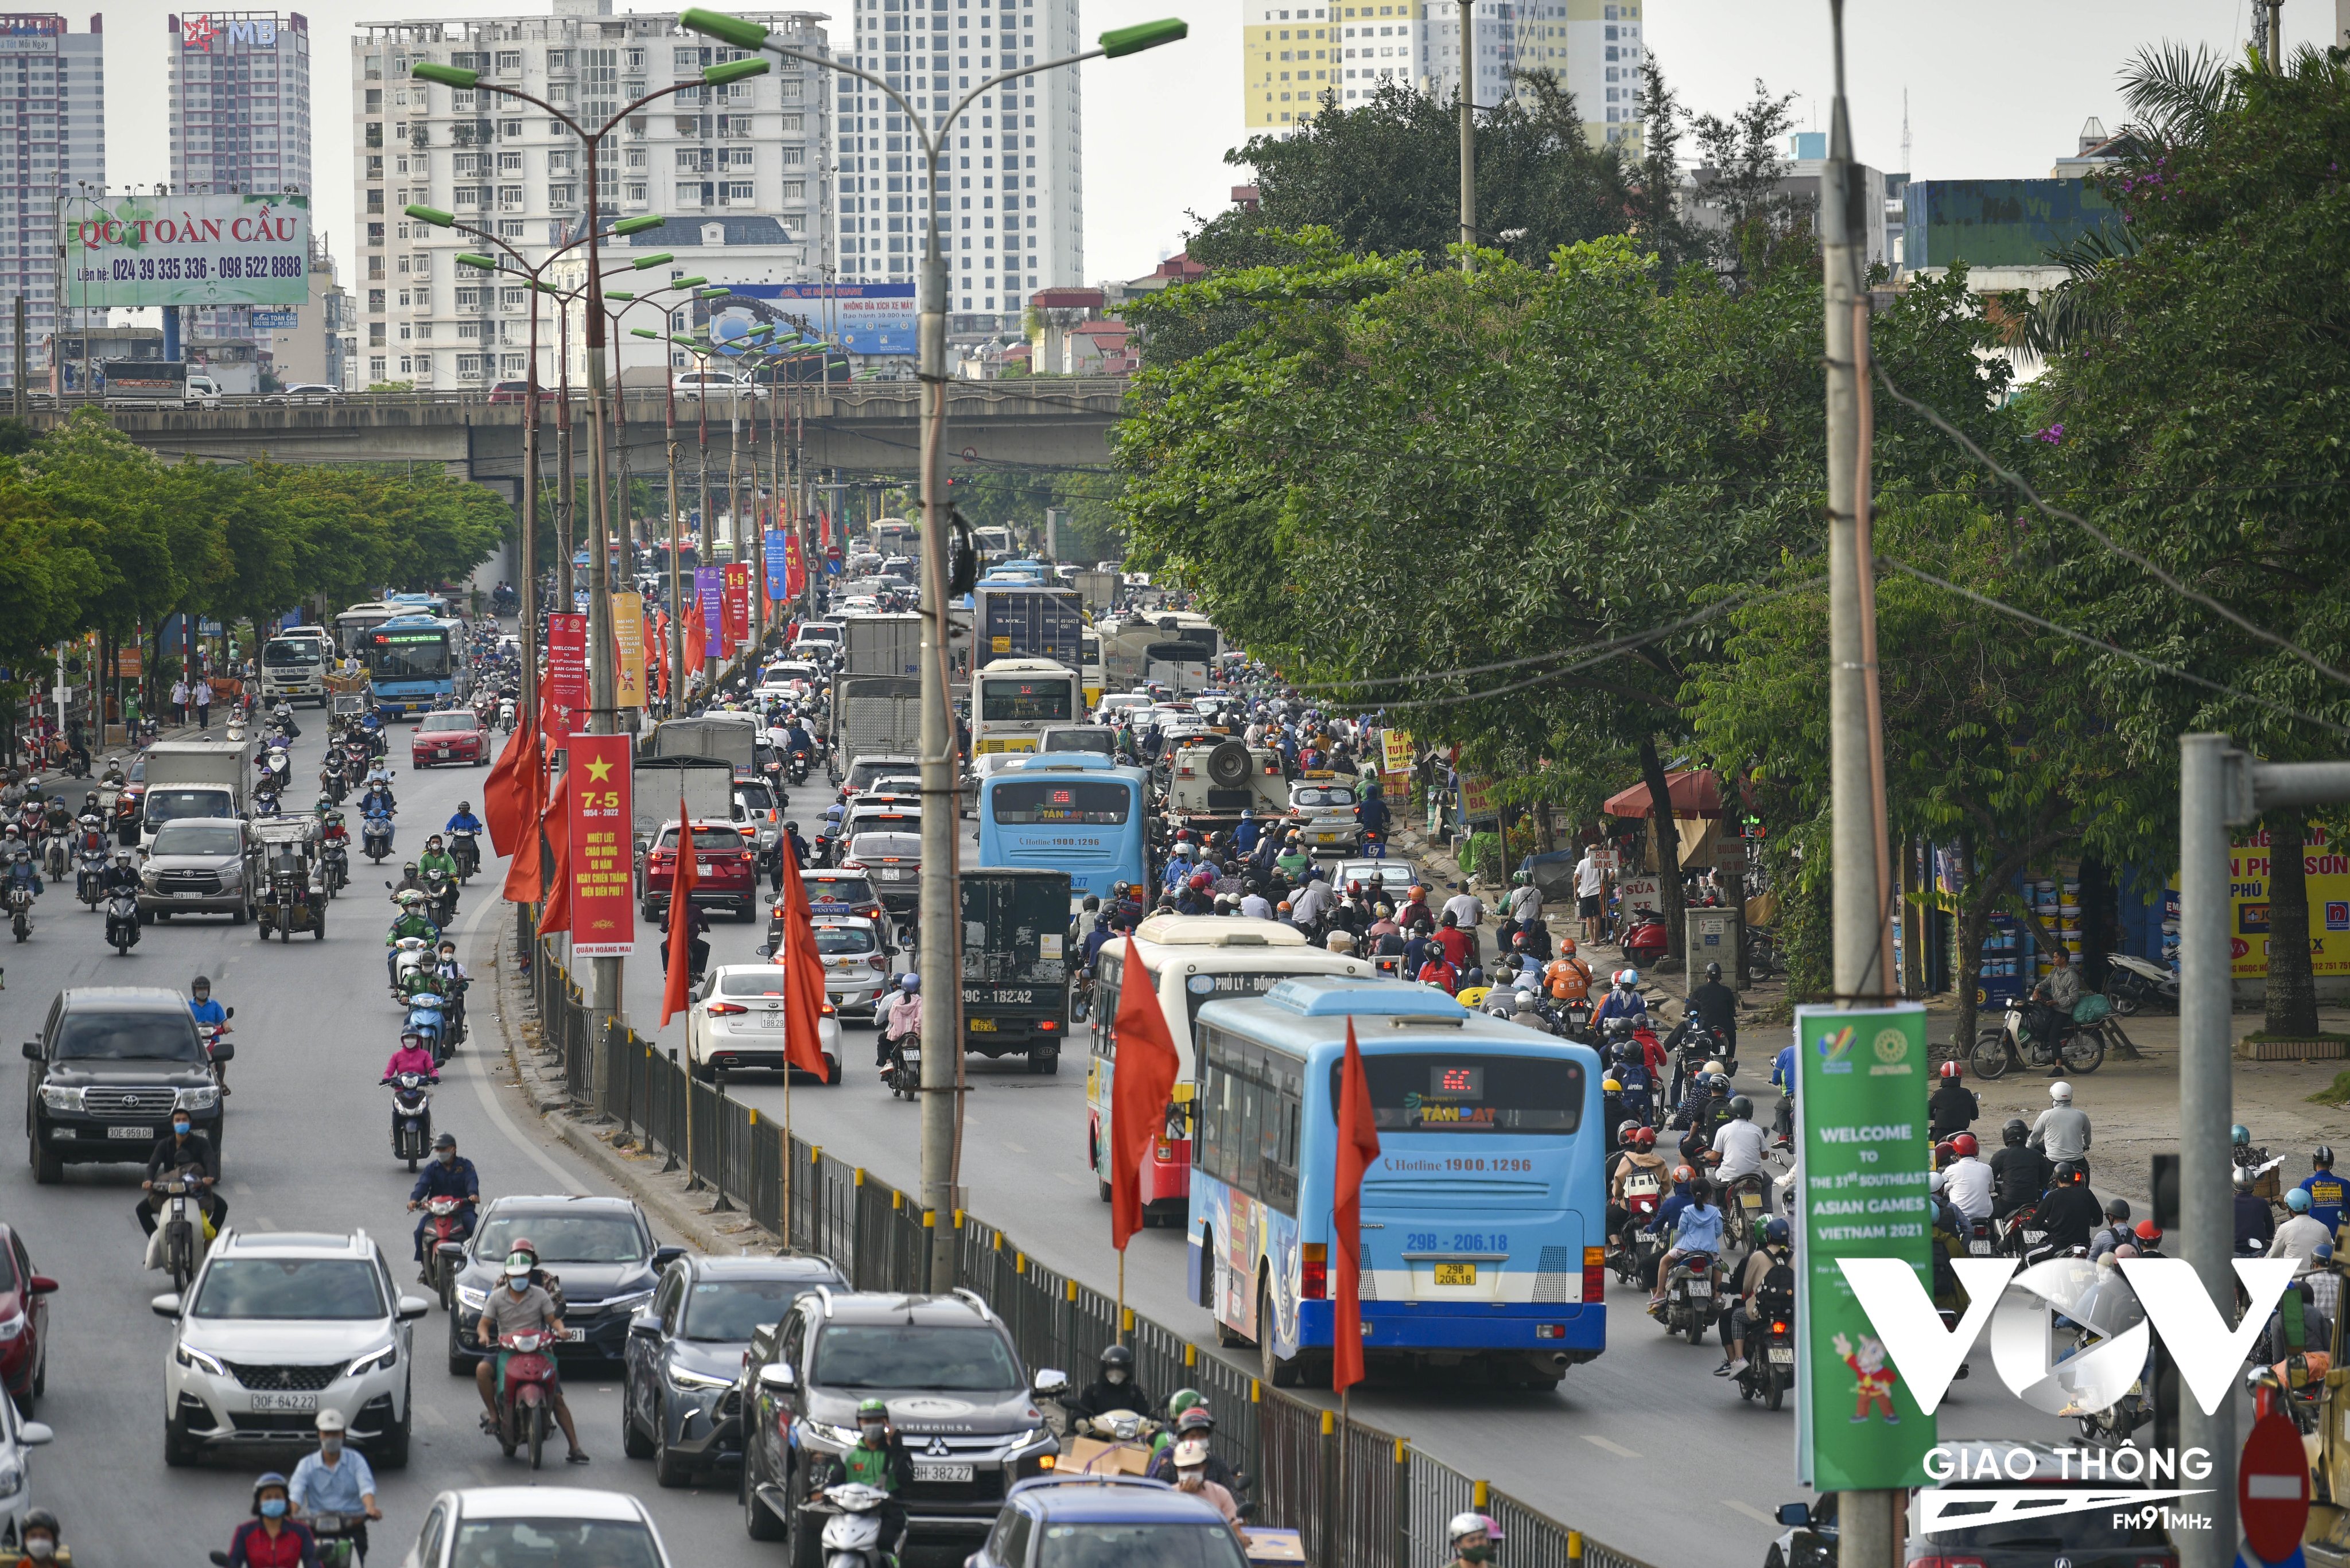 Tốc độ là một yếu tố rất nhỏ trong những vụ TNGT xảy ra gần đây tại Hà Nội, mà yếu tố chính là mật độ dòng phương tiện hỗn hợp quá đông, nên khó có thể đổ lỗi cho tốc độ lưu thông trong đô thị